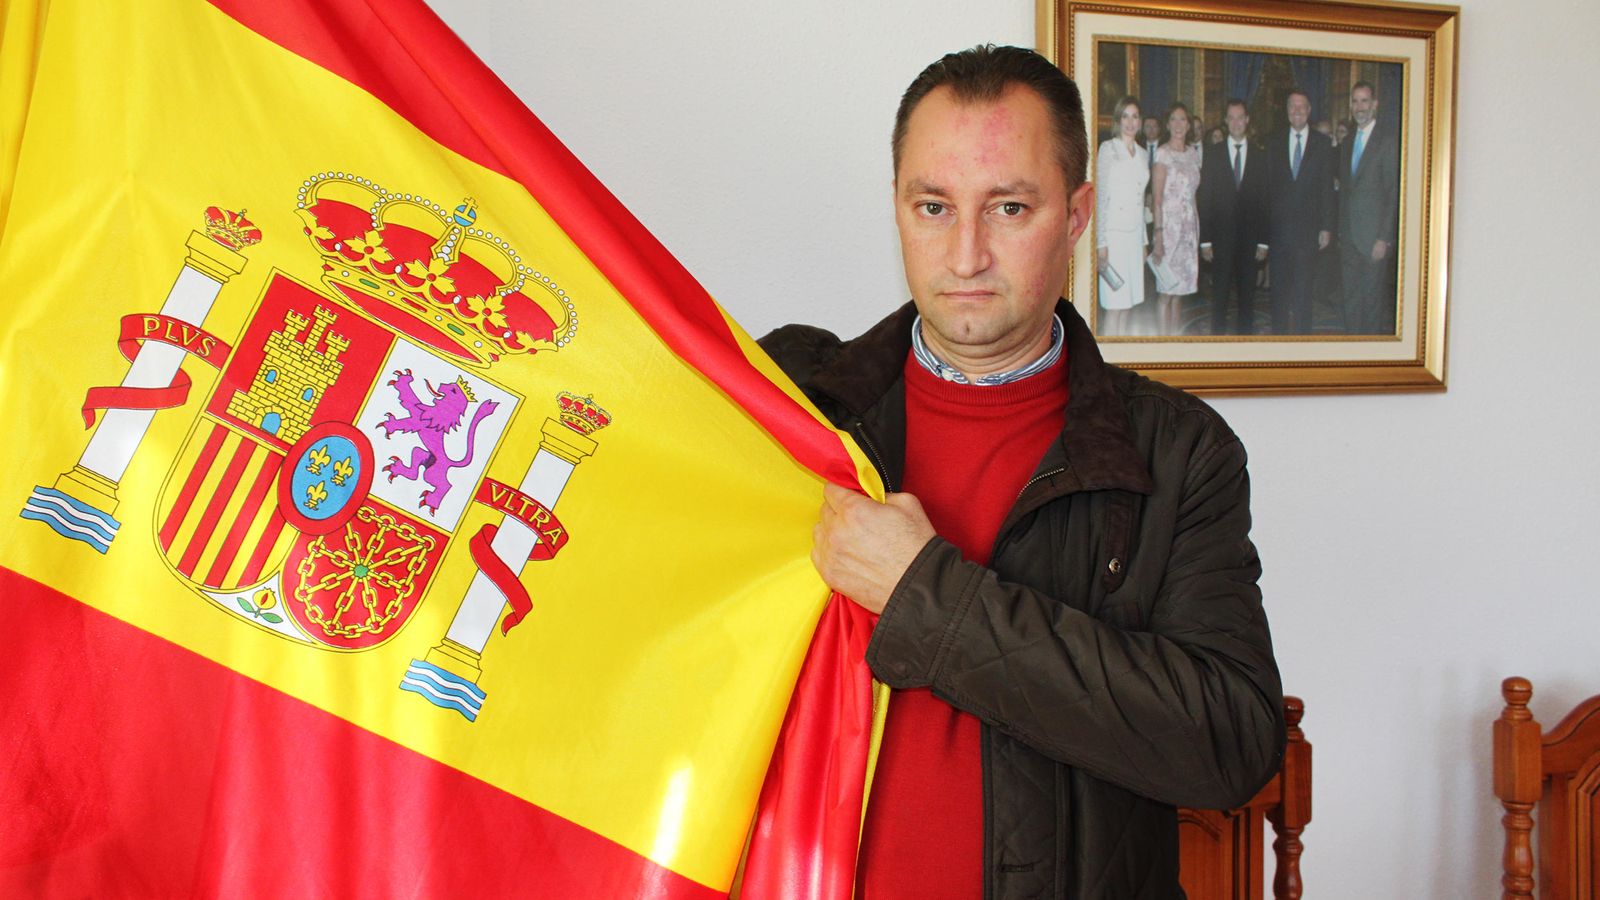 Foto: Aurel Truta, el primer alcalde rumano de España, posa en el salón de plenos de Páramo de Boedo (Palencia). (Foto: A. Villarino)